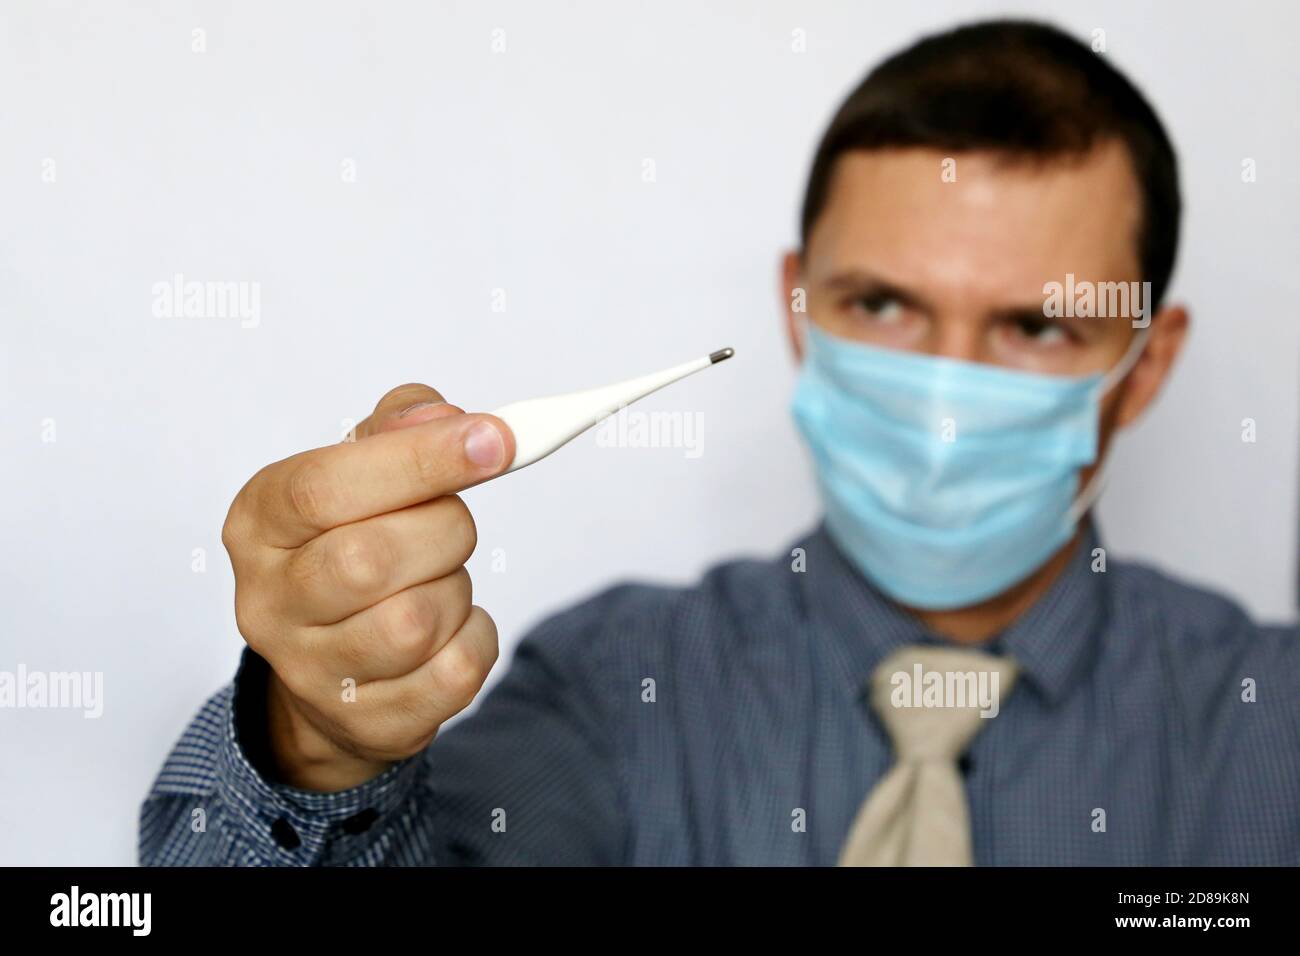 Mann in Gesichtsmaske und Bürokleidung am PC-Monitor schaut auf Digitalthermometer in der Hand. Hohe Körpertemperatur, Sicherheit bei der Arbeit während des Coronavirus Stockfoto